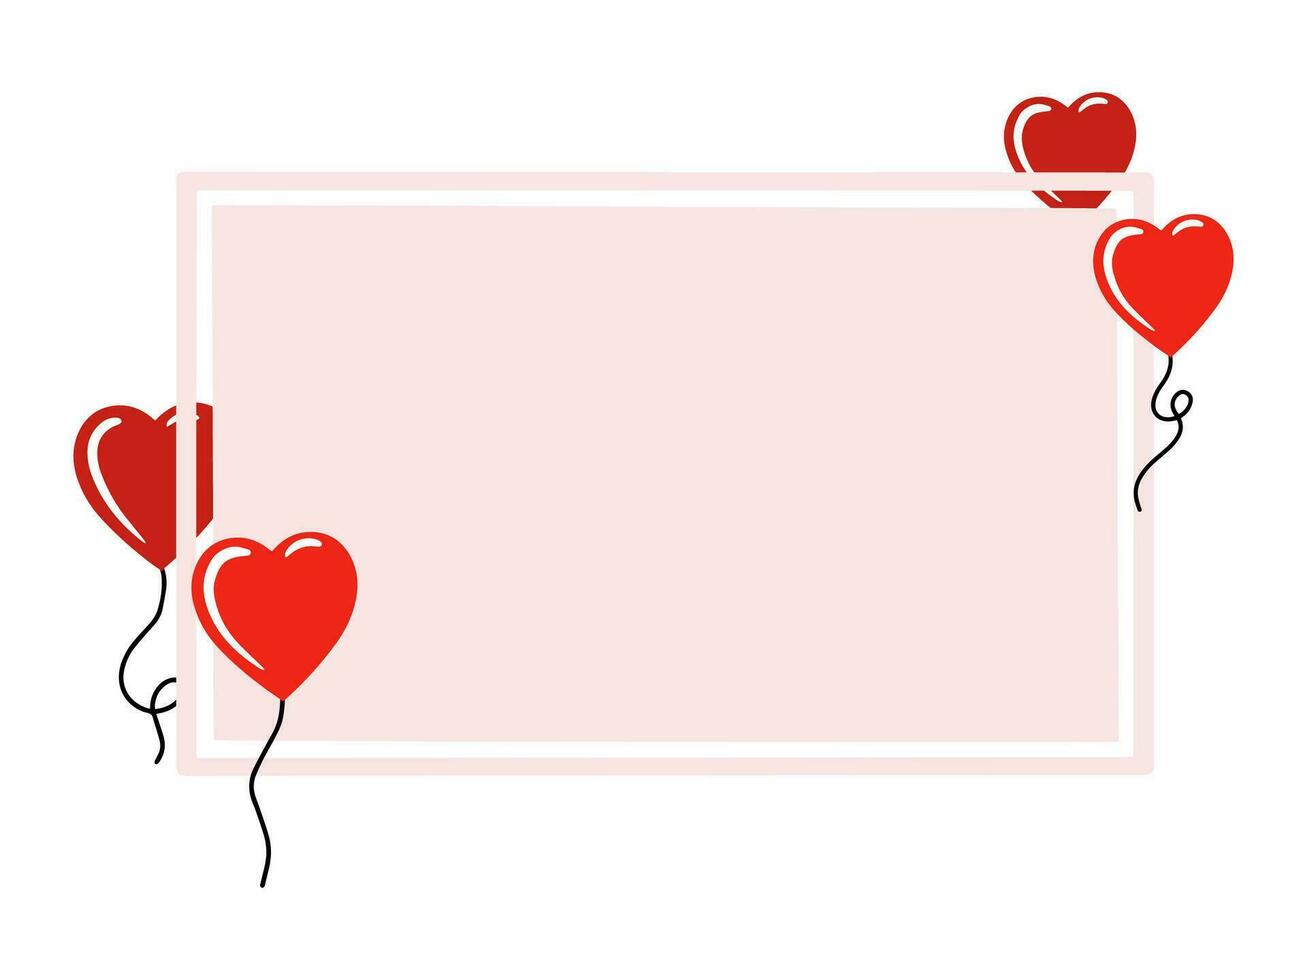 Valentinsgrüße Tag Rahmen Ballon Hintergrund vektor